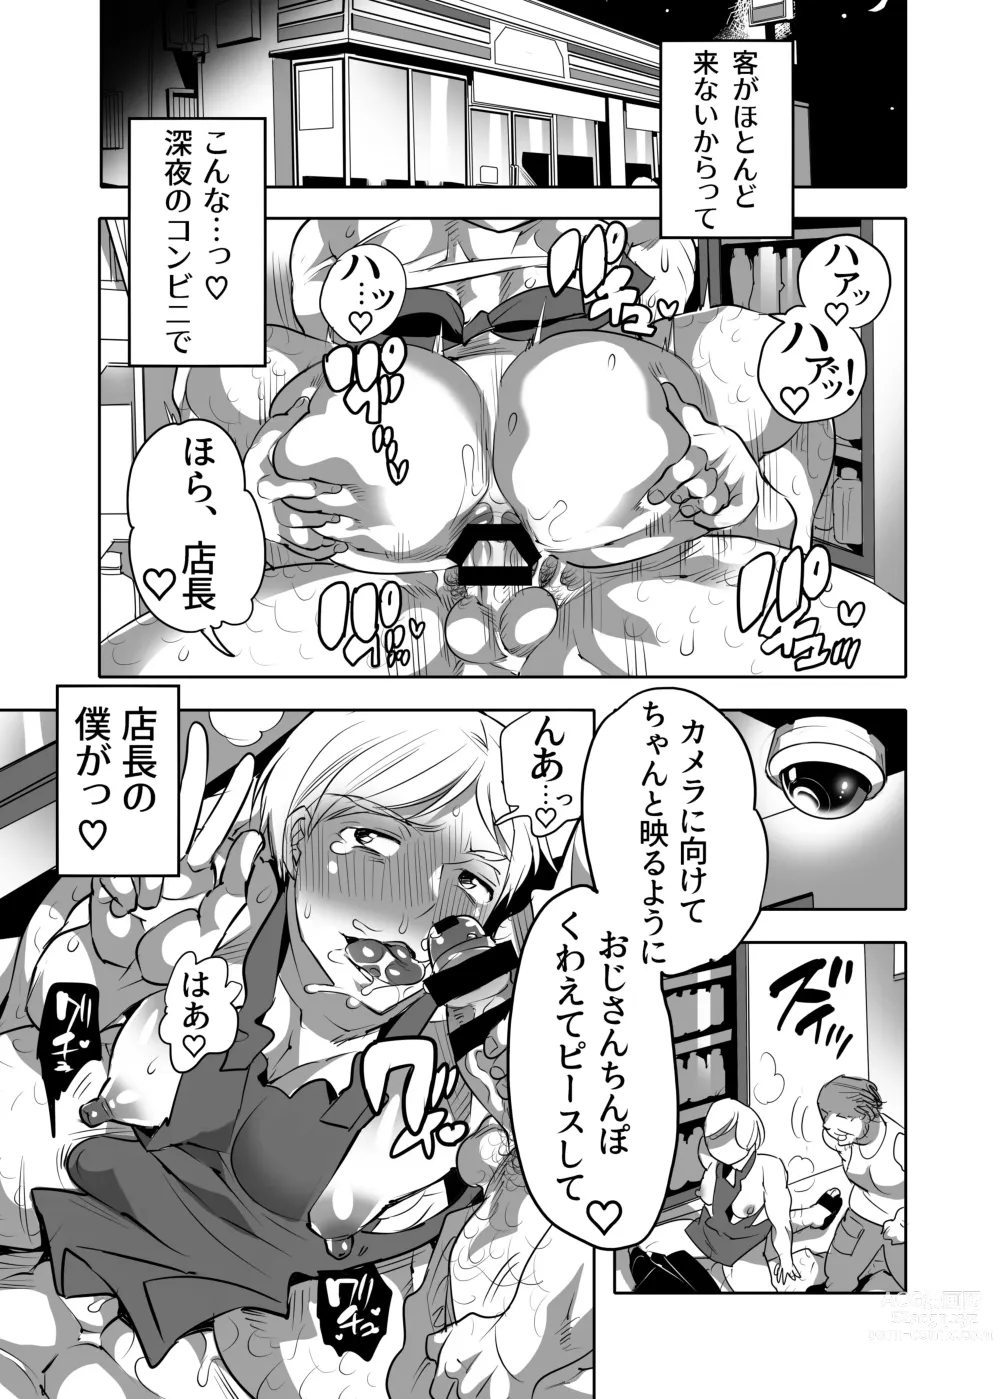 Page 3 of manga Abuso OK Prisionero Niño